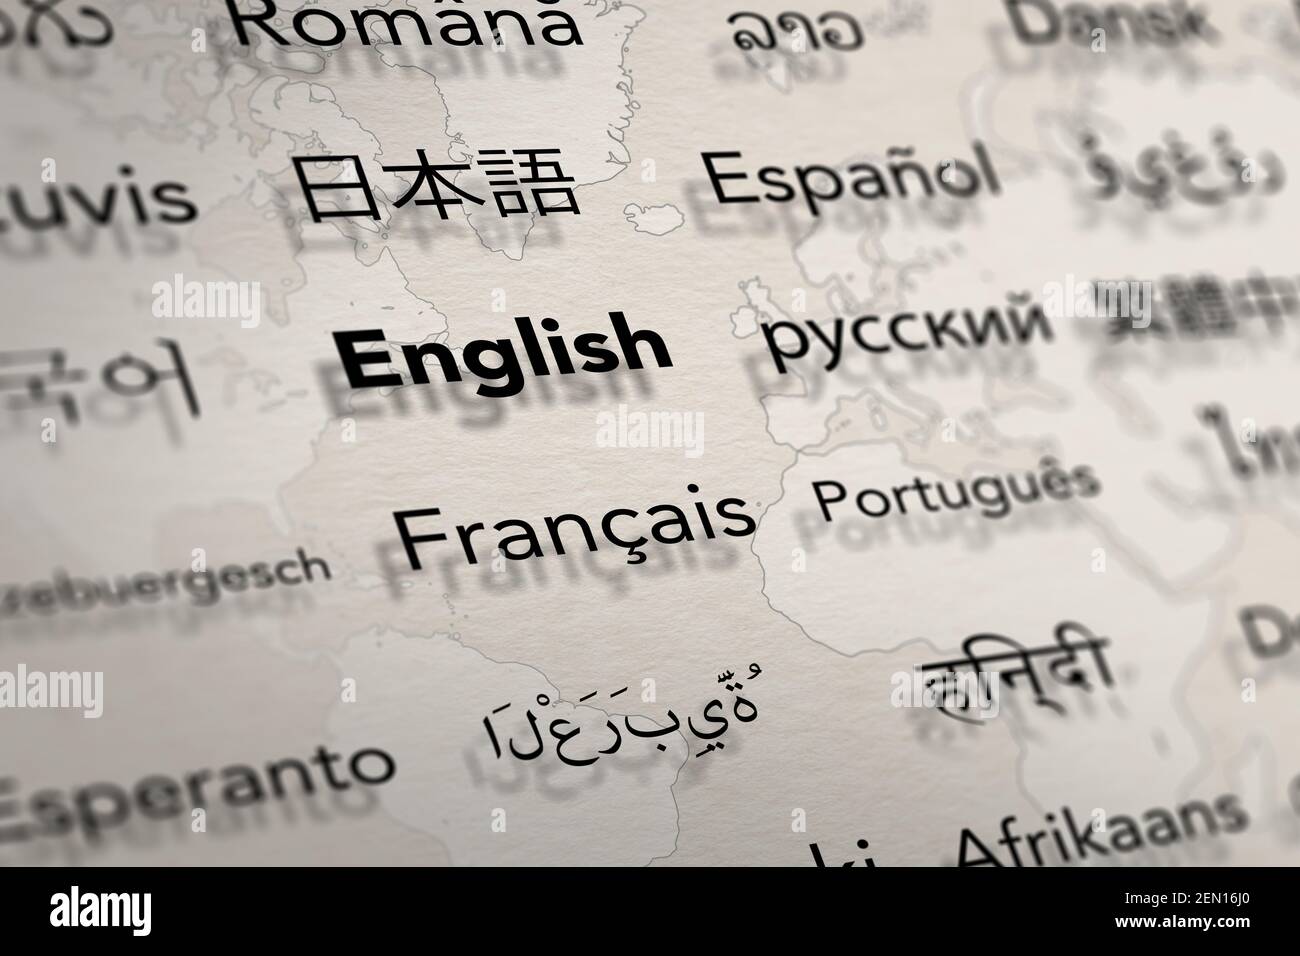 Diverse lingue importanti su carta con sfondo mappa del mondo. Immagine della profondità di campo. Traduzione e apprendimento delle lingue. Foto Stock